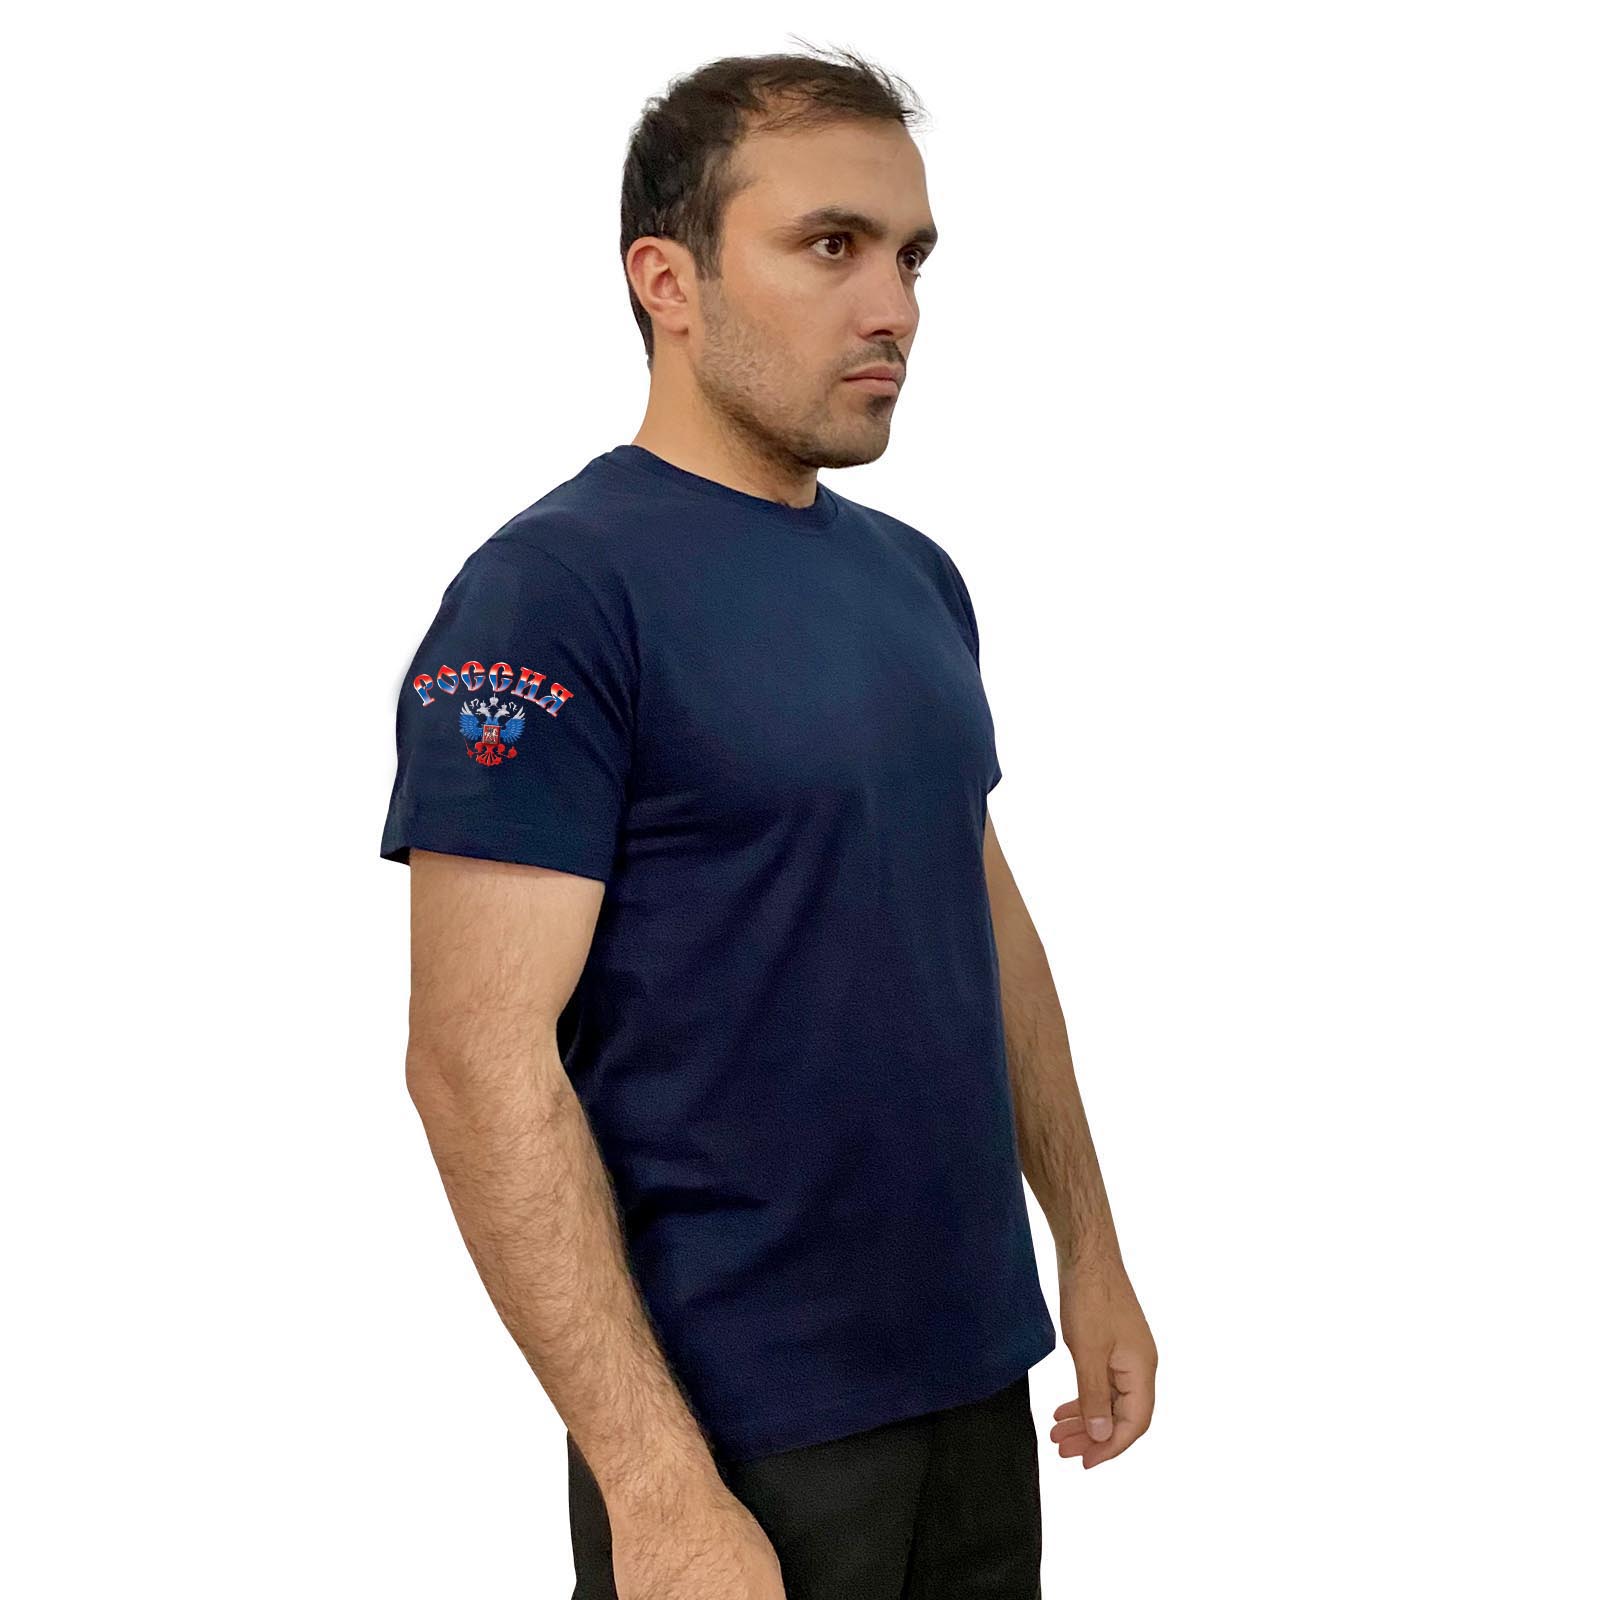 Тёмно-синяя футболка с термотрансфером "Россия" на рукаве